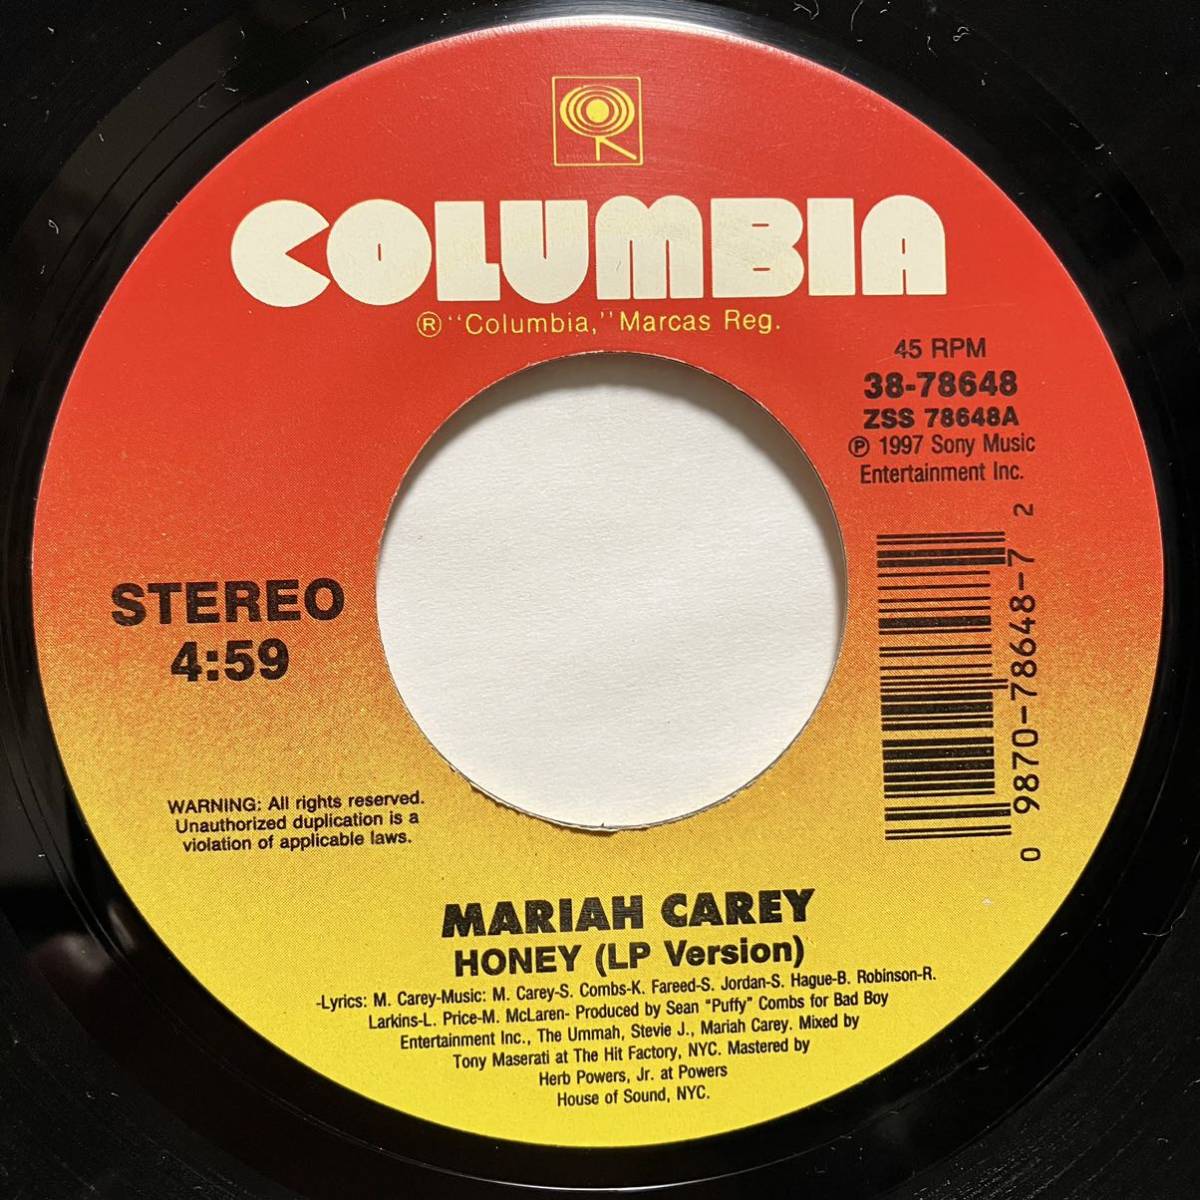 【激レア7inch】MARIAH CAREY / HONEY (LP Version) / (Bad Boy Remix ft. Mase & The Lox) P.Diddy_画像1